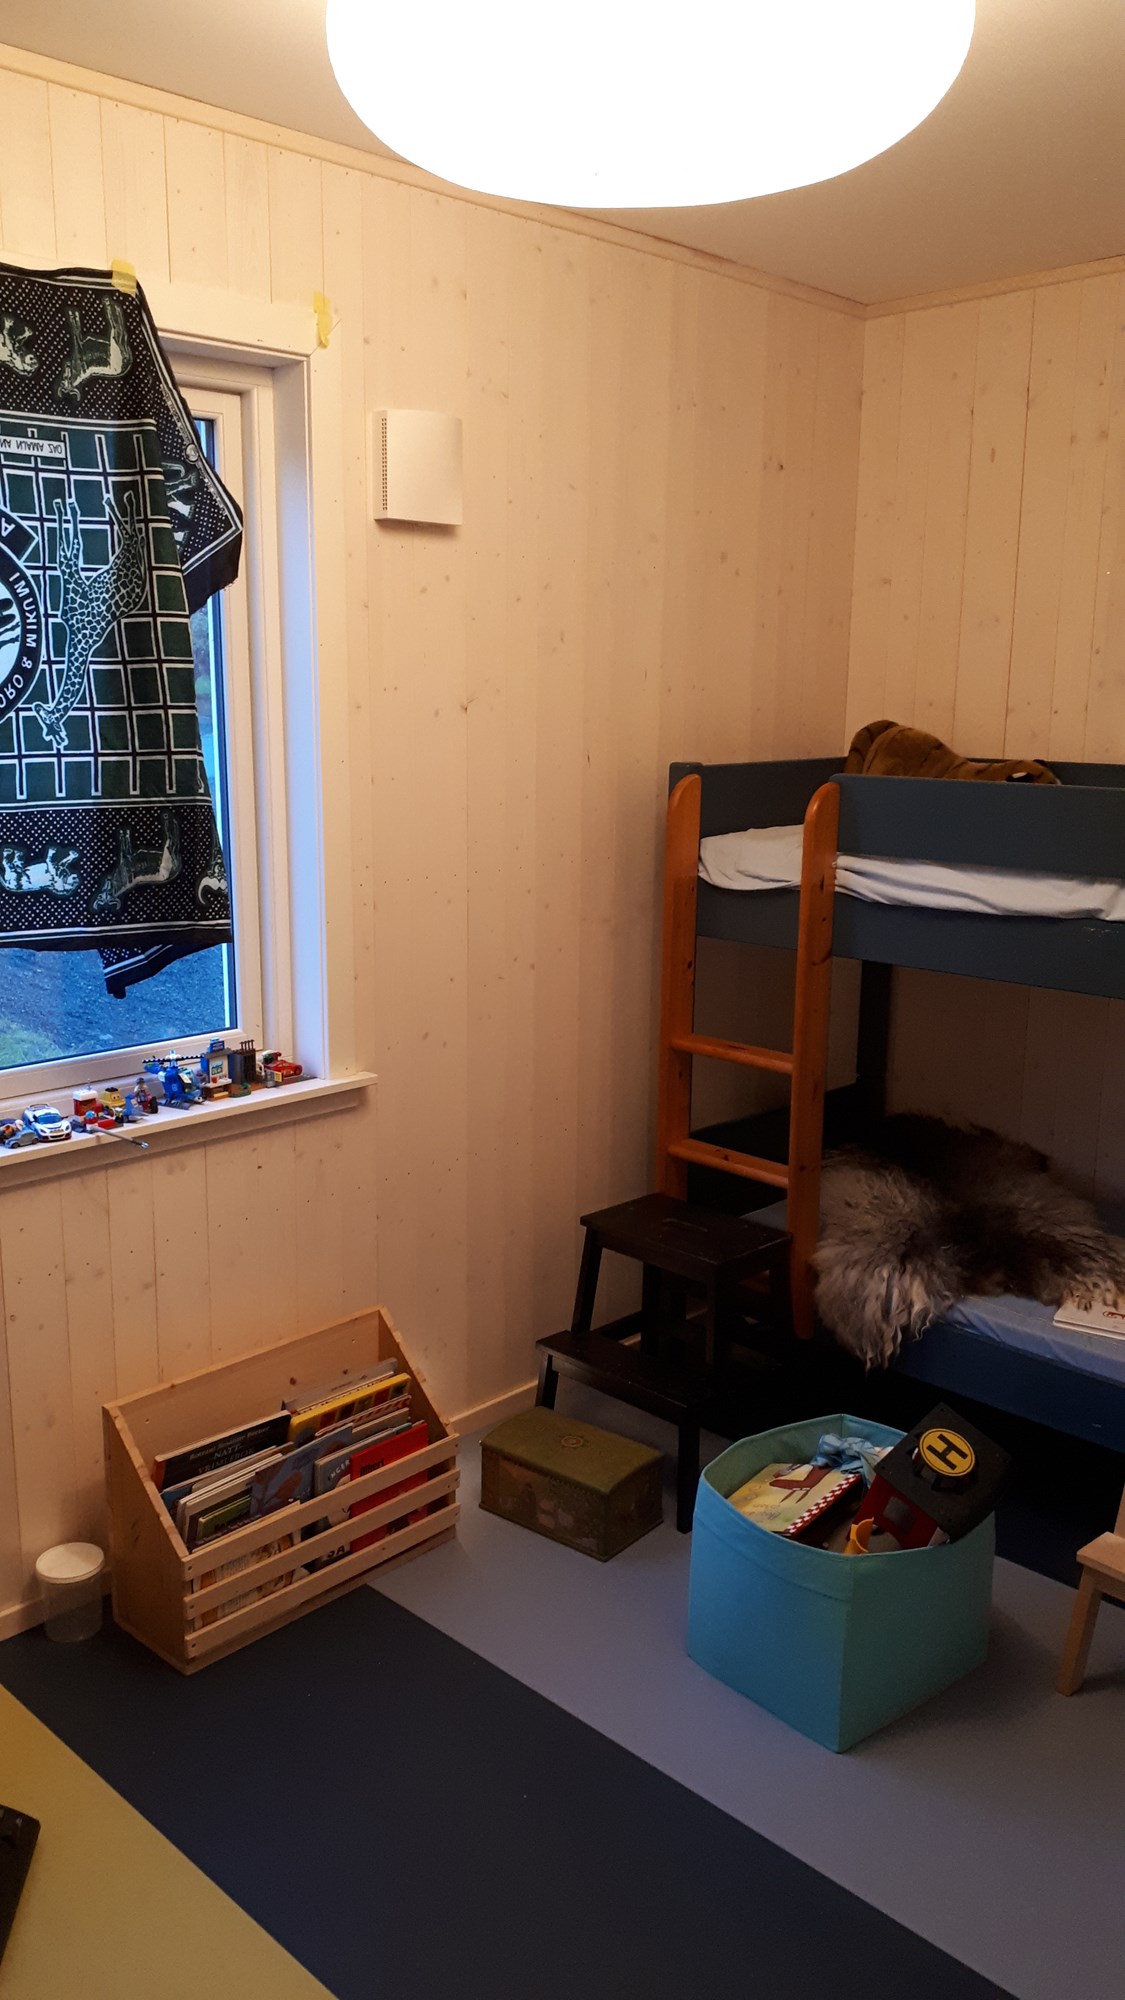 Oppgradering og oppussing av barnerom på 9 m2 - 20181001_072504.jpg - vifteovn